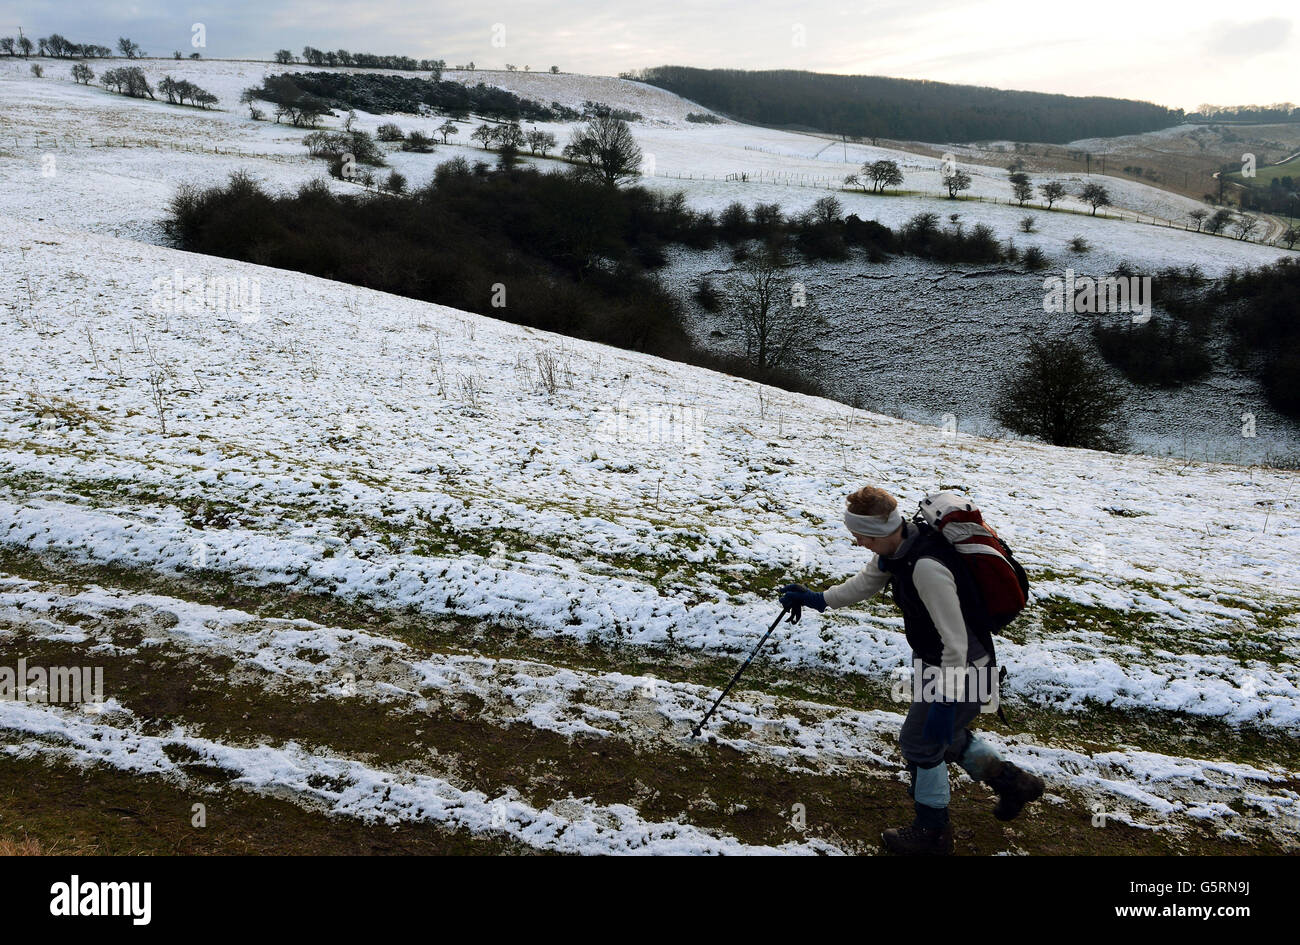 La neige sur le sol élevé des Yorkshire Wolds dans les pâturages de Millington, près de Pocklington, donne à un marcheur un aperçu du temps d'hiver et de la neige qui devrait affecter de nombreuses régions du Royaume-Uni dans les jours à venir. Banque D'Images